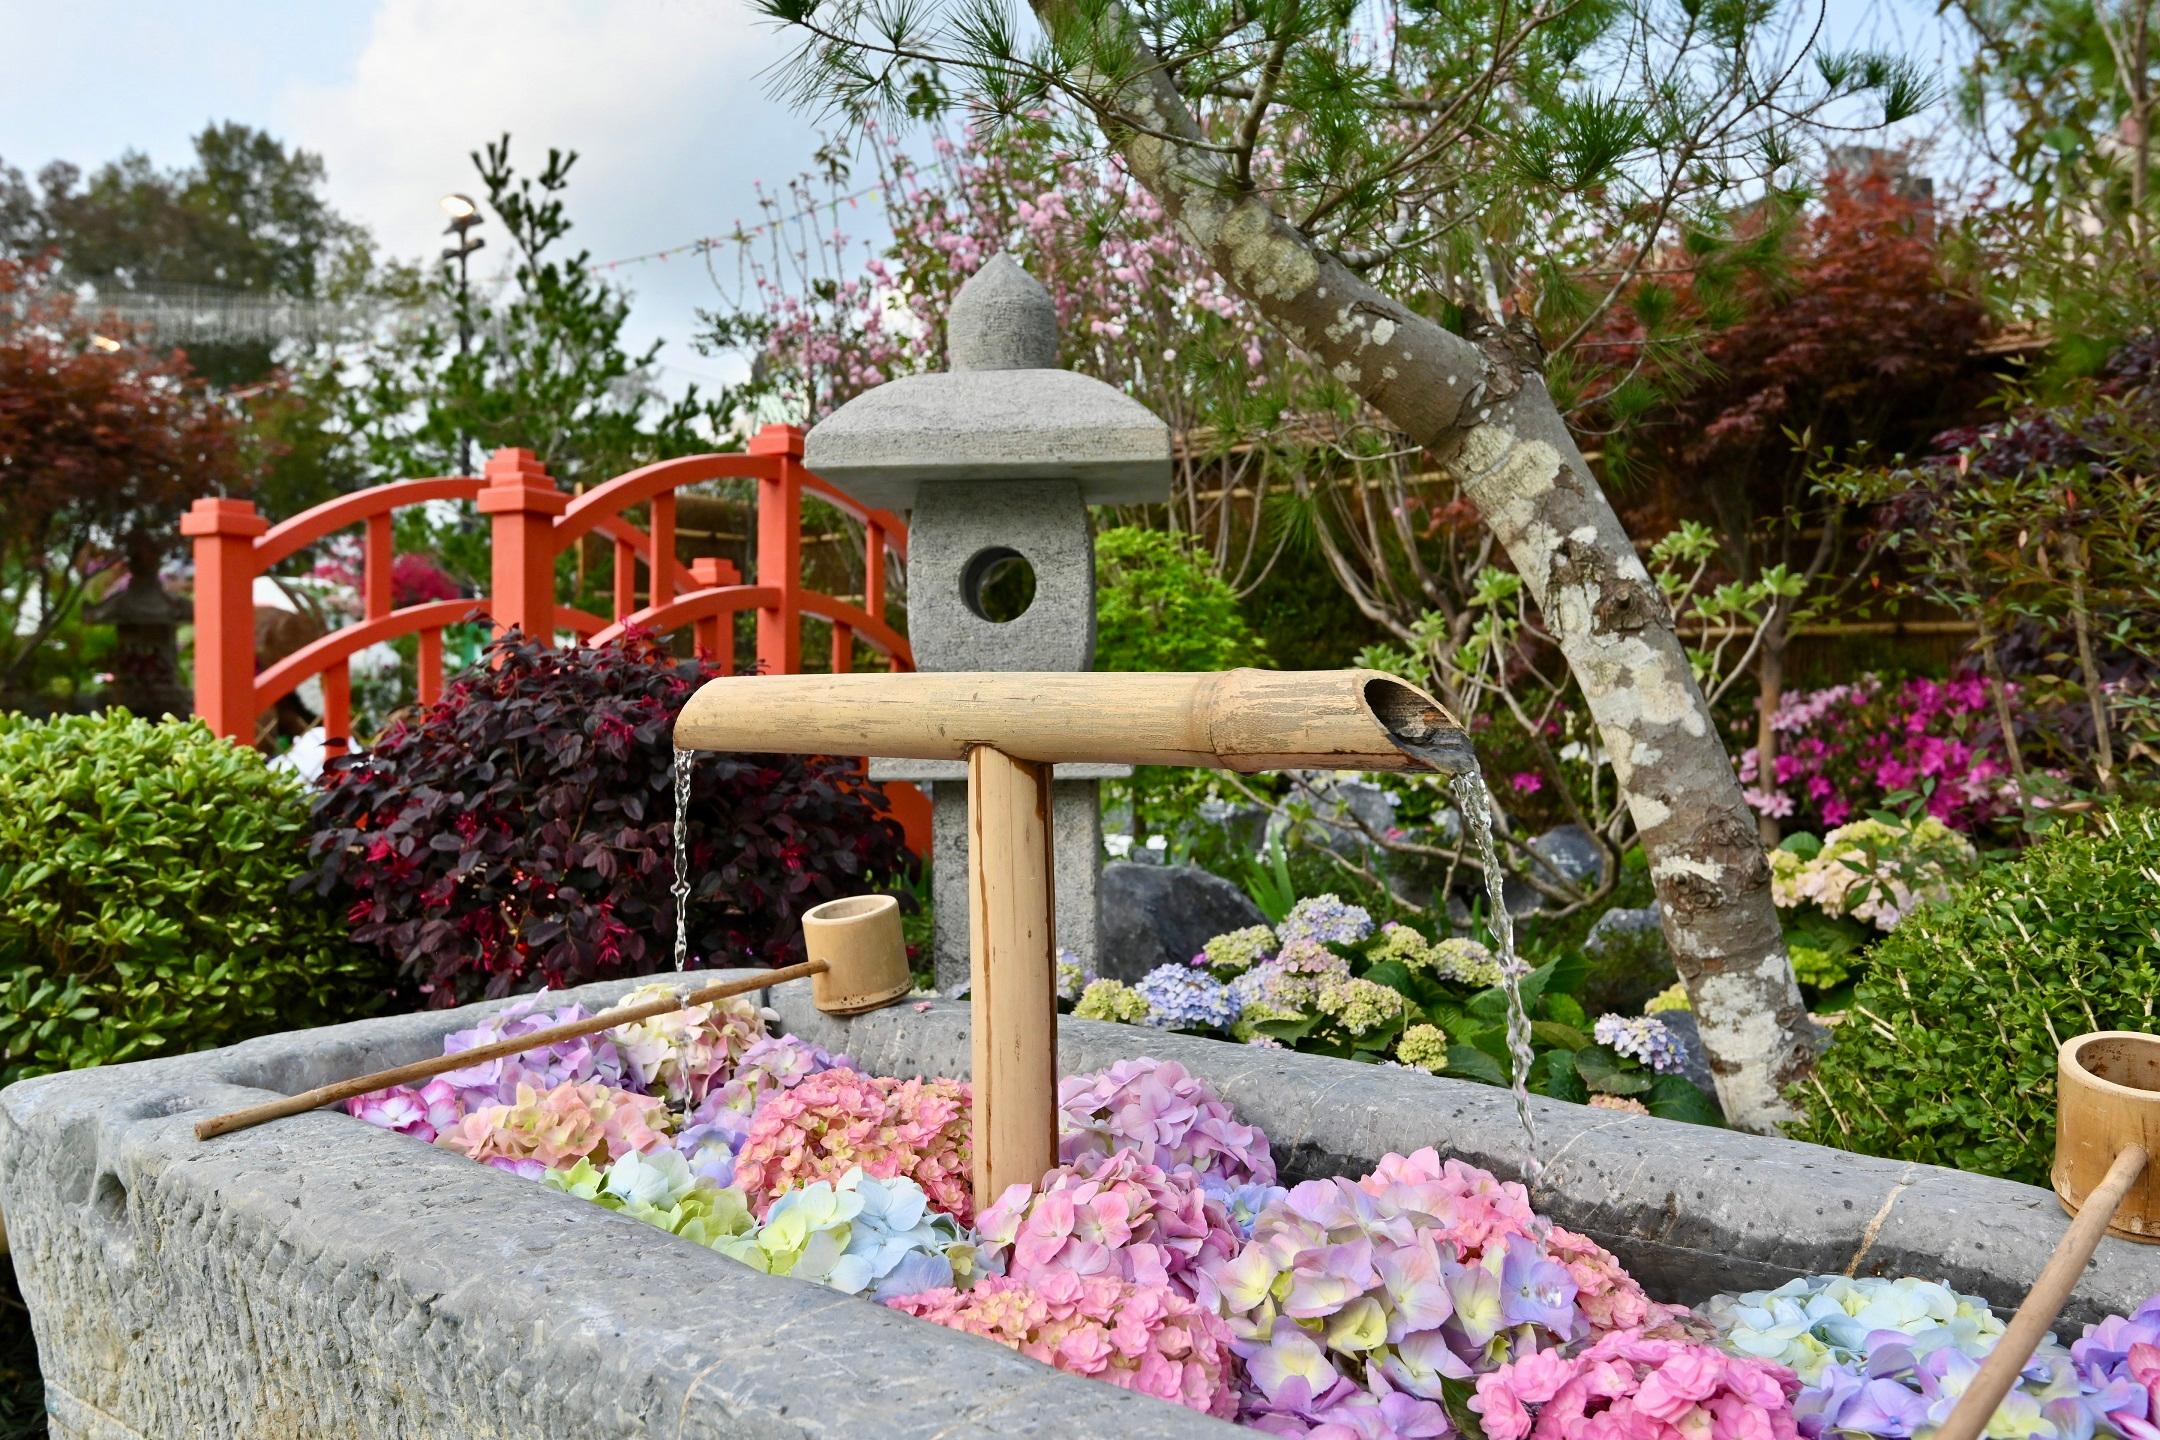 二零二三年香港花卉展覽（花展）現於維多利亞公園舉行，場內展出花展其中一項活動——十八區東方園圃及西方園圃比賽的得獎作品。圖示東方園圃環保優勝獎：東區的「我的庭園」。